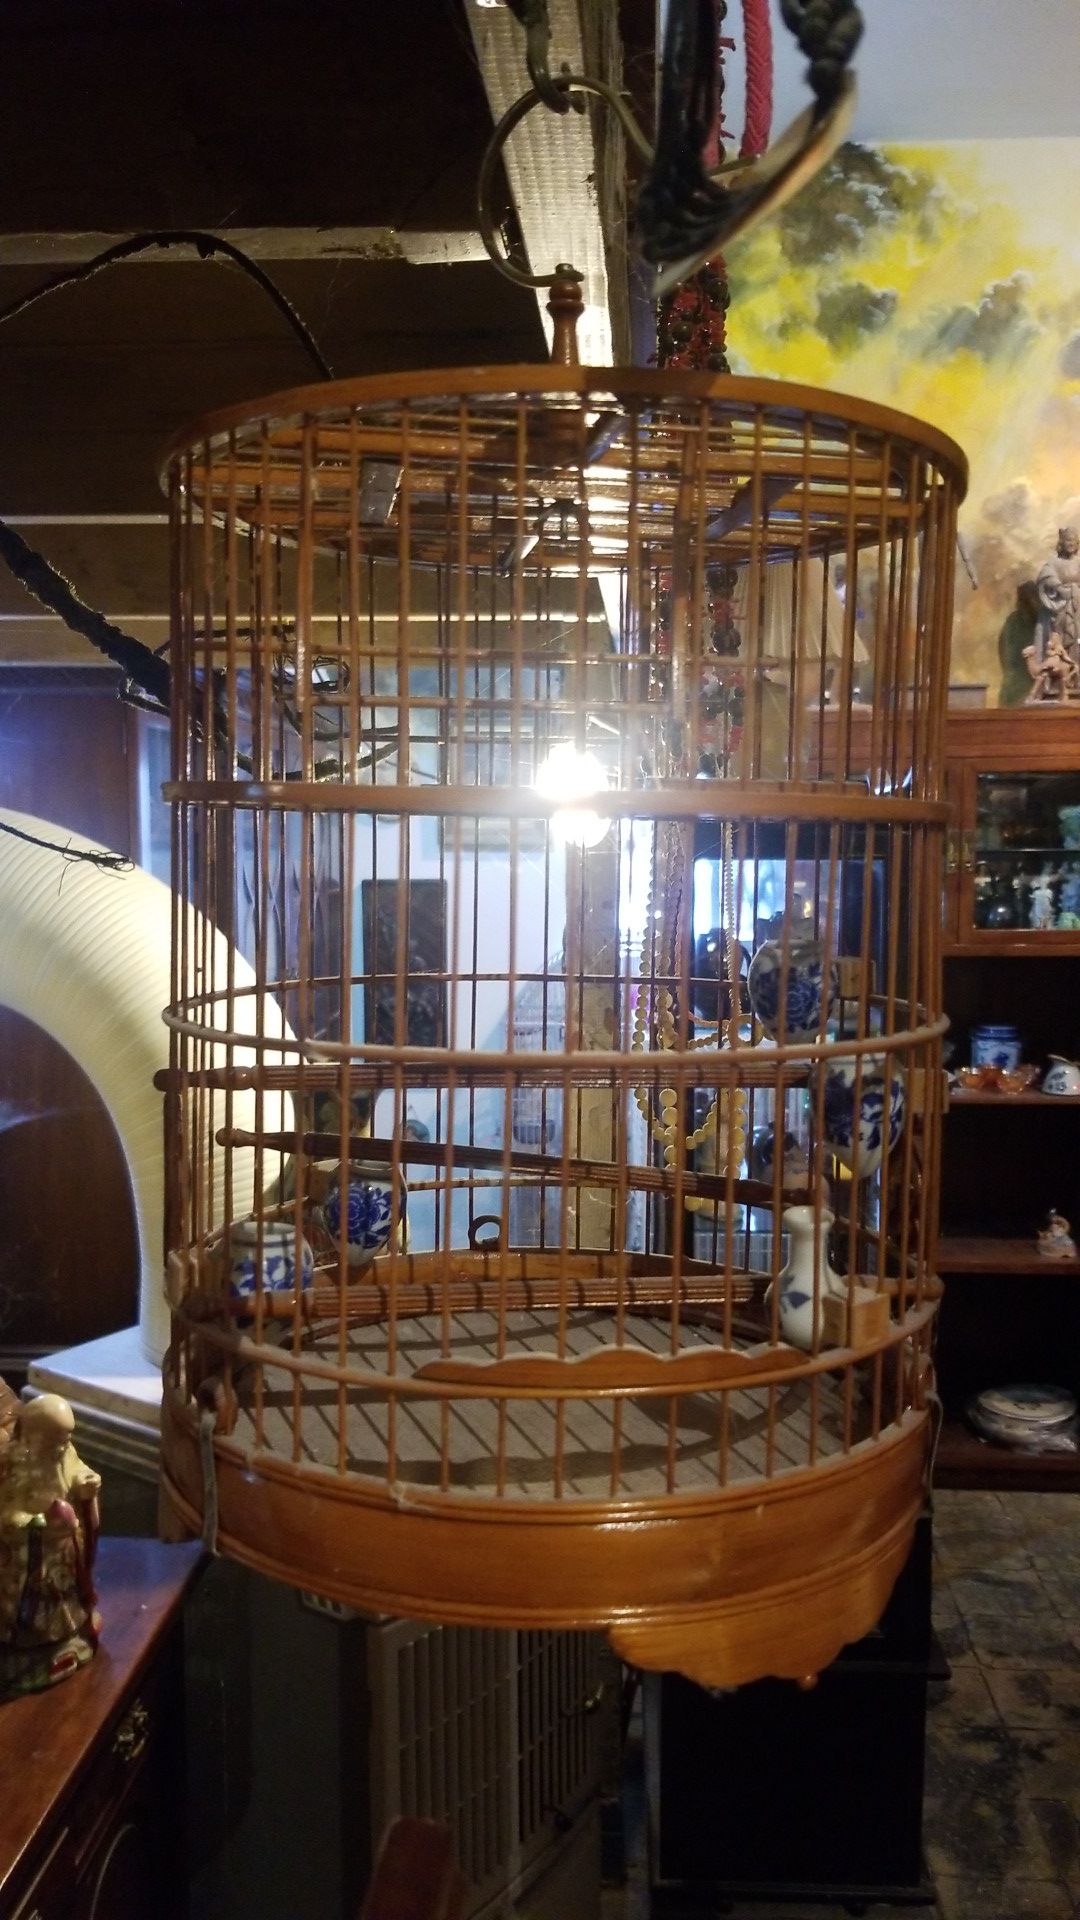 Asian Bamboo songbird cage, China Japan ?